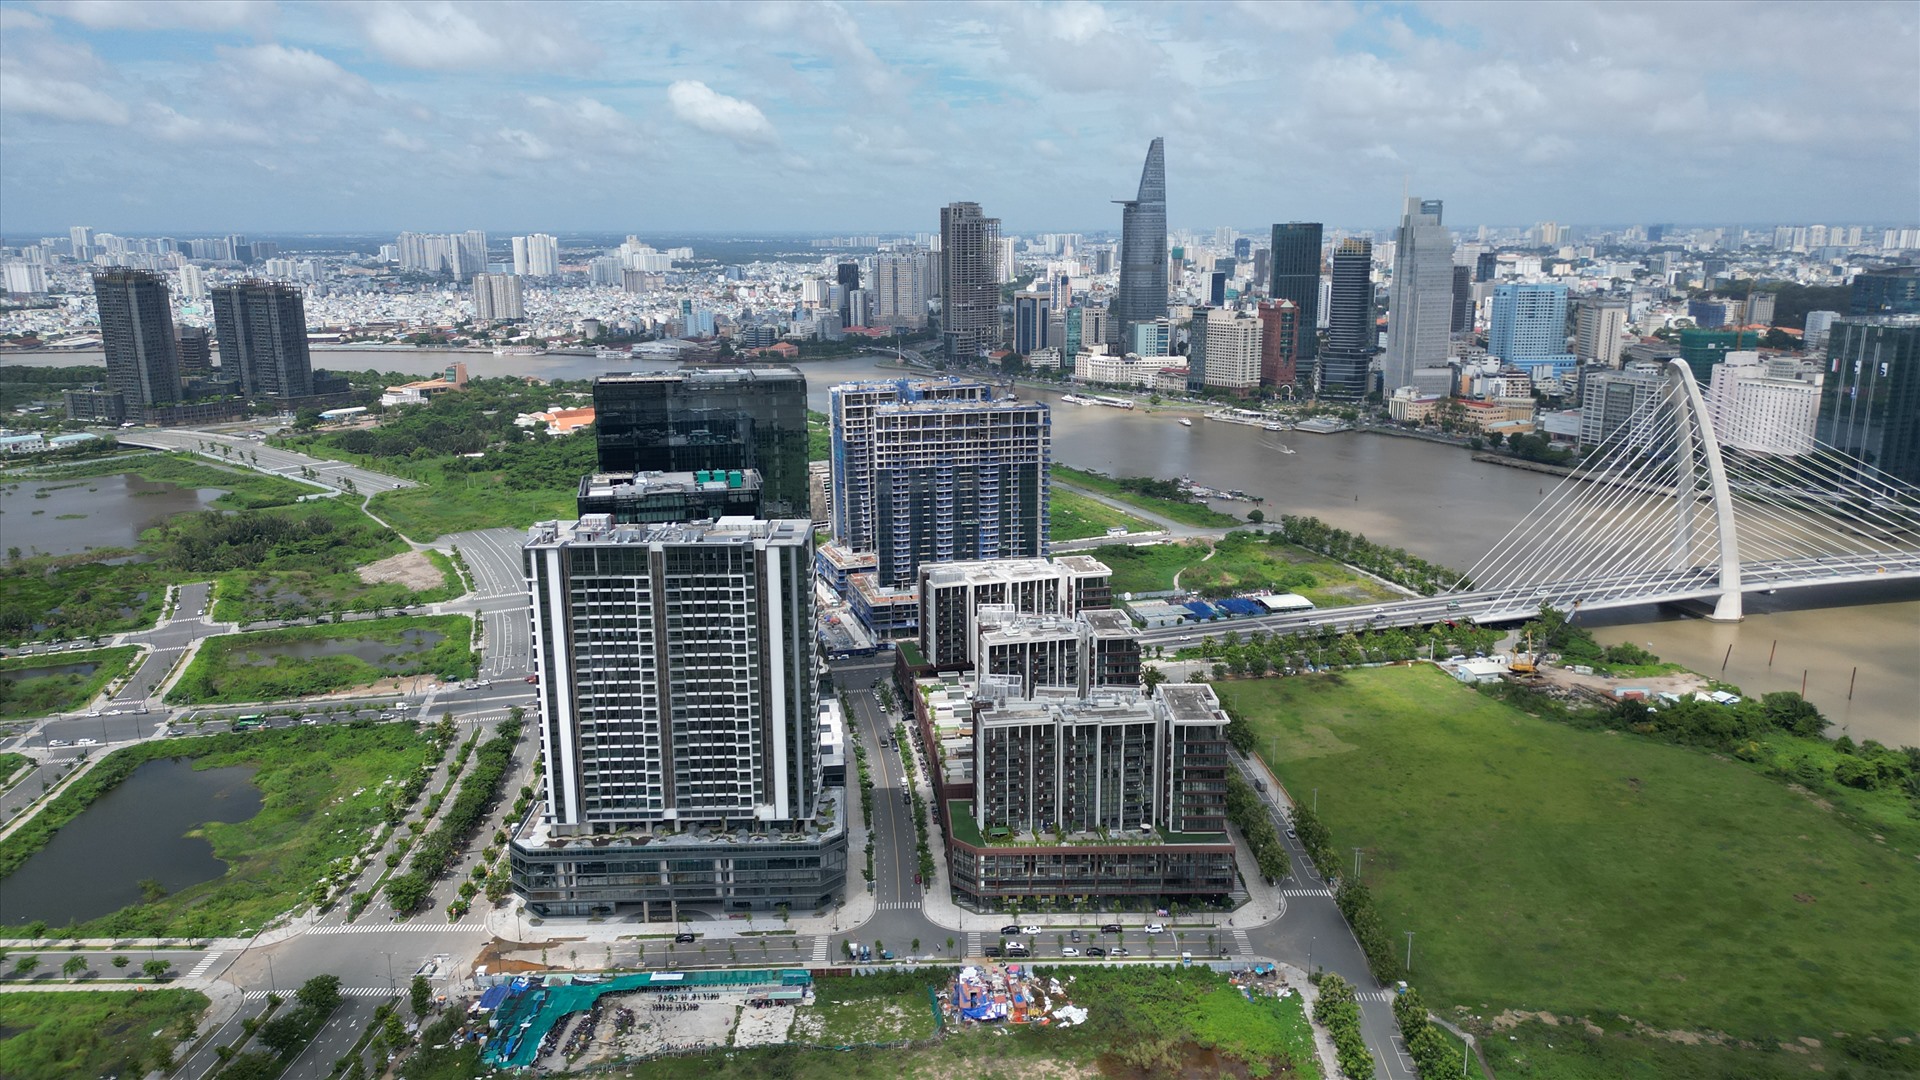 Cách đó không xa là khu phức hợp căn hộ - văn phòng - trung tâm thương mại The Metropole Thủ Thiêm được phát triển bởi Sơn Kim Land. Dự án nằm ngay dưới chân cầu Thủ Thiêm 2, nhờ đó có tính kết nối cao với khu vực trung tâm quận 1.